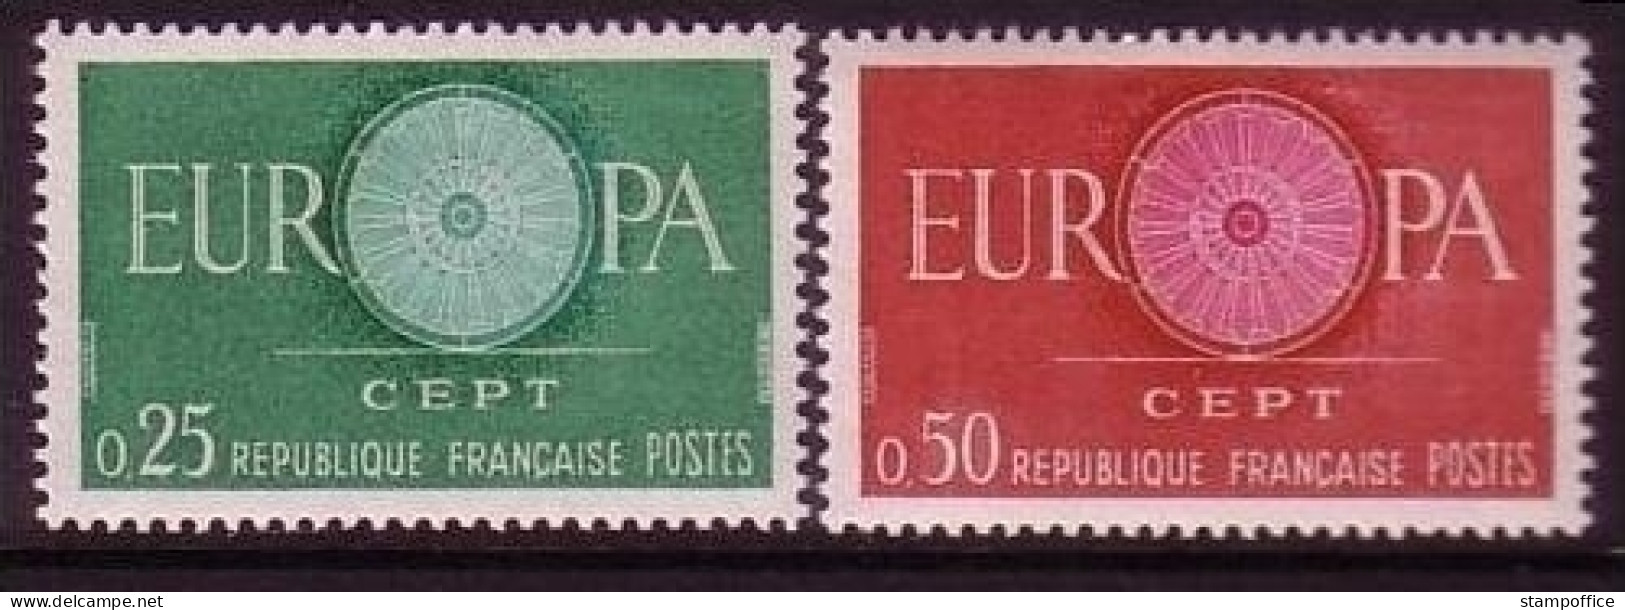 FRANKREICH MI-NR. 1318-1319 POSTFRISCH(MINT) EUROPA 1960 WAGENRAD - 1960